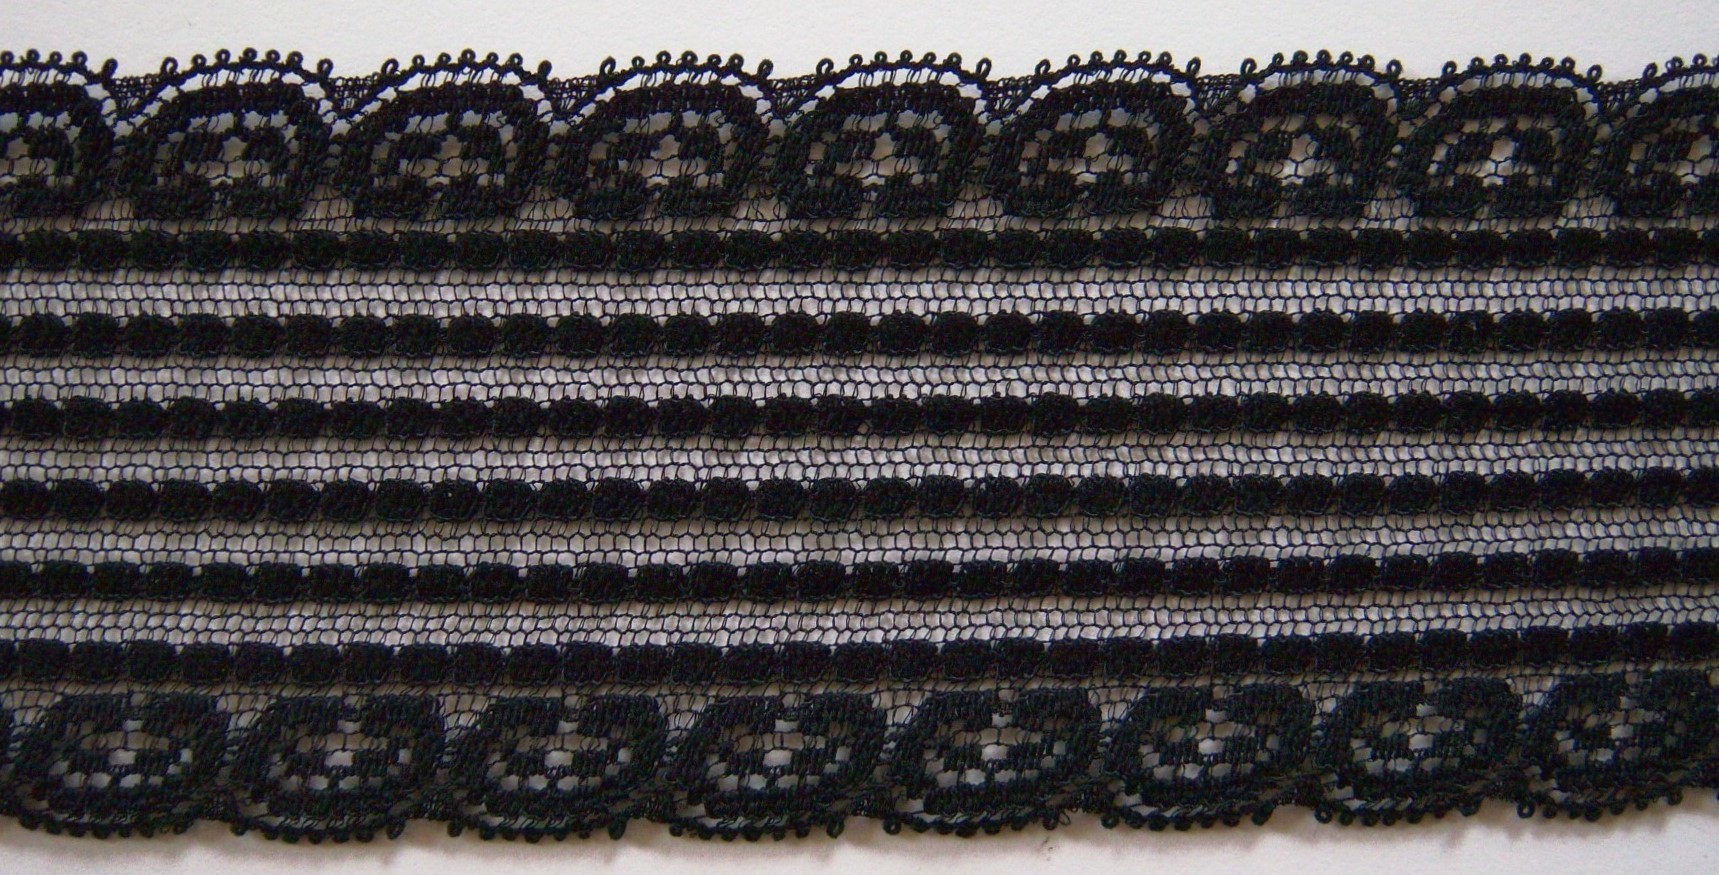 Black 2 1/2" Nylon Lace